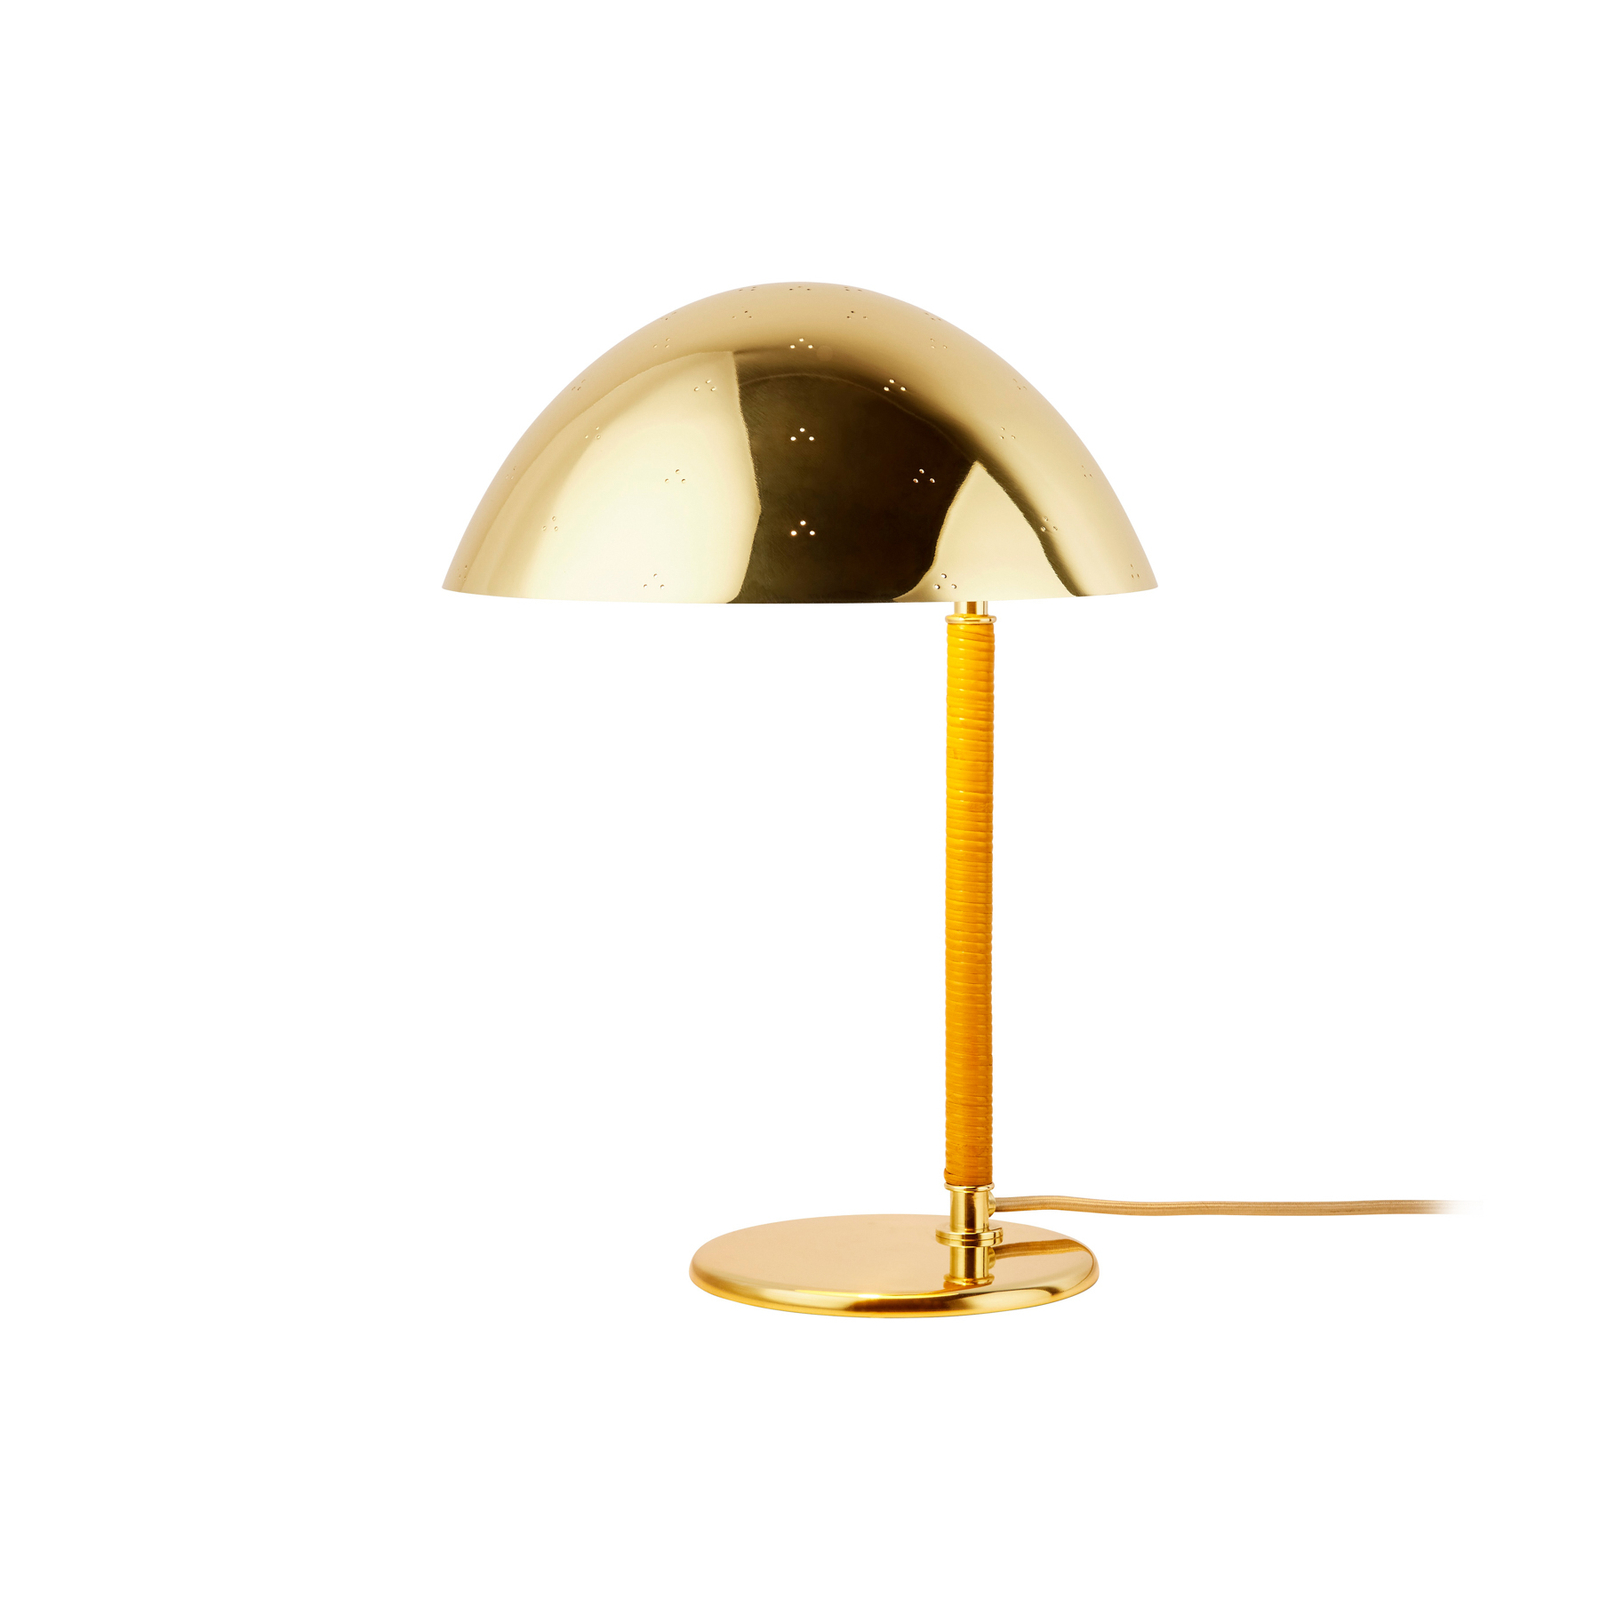 Lampada da tavolo Gubi 9209, ottone, rattan, altezza 36,5 cm